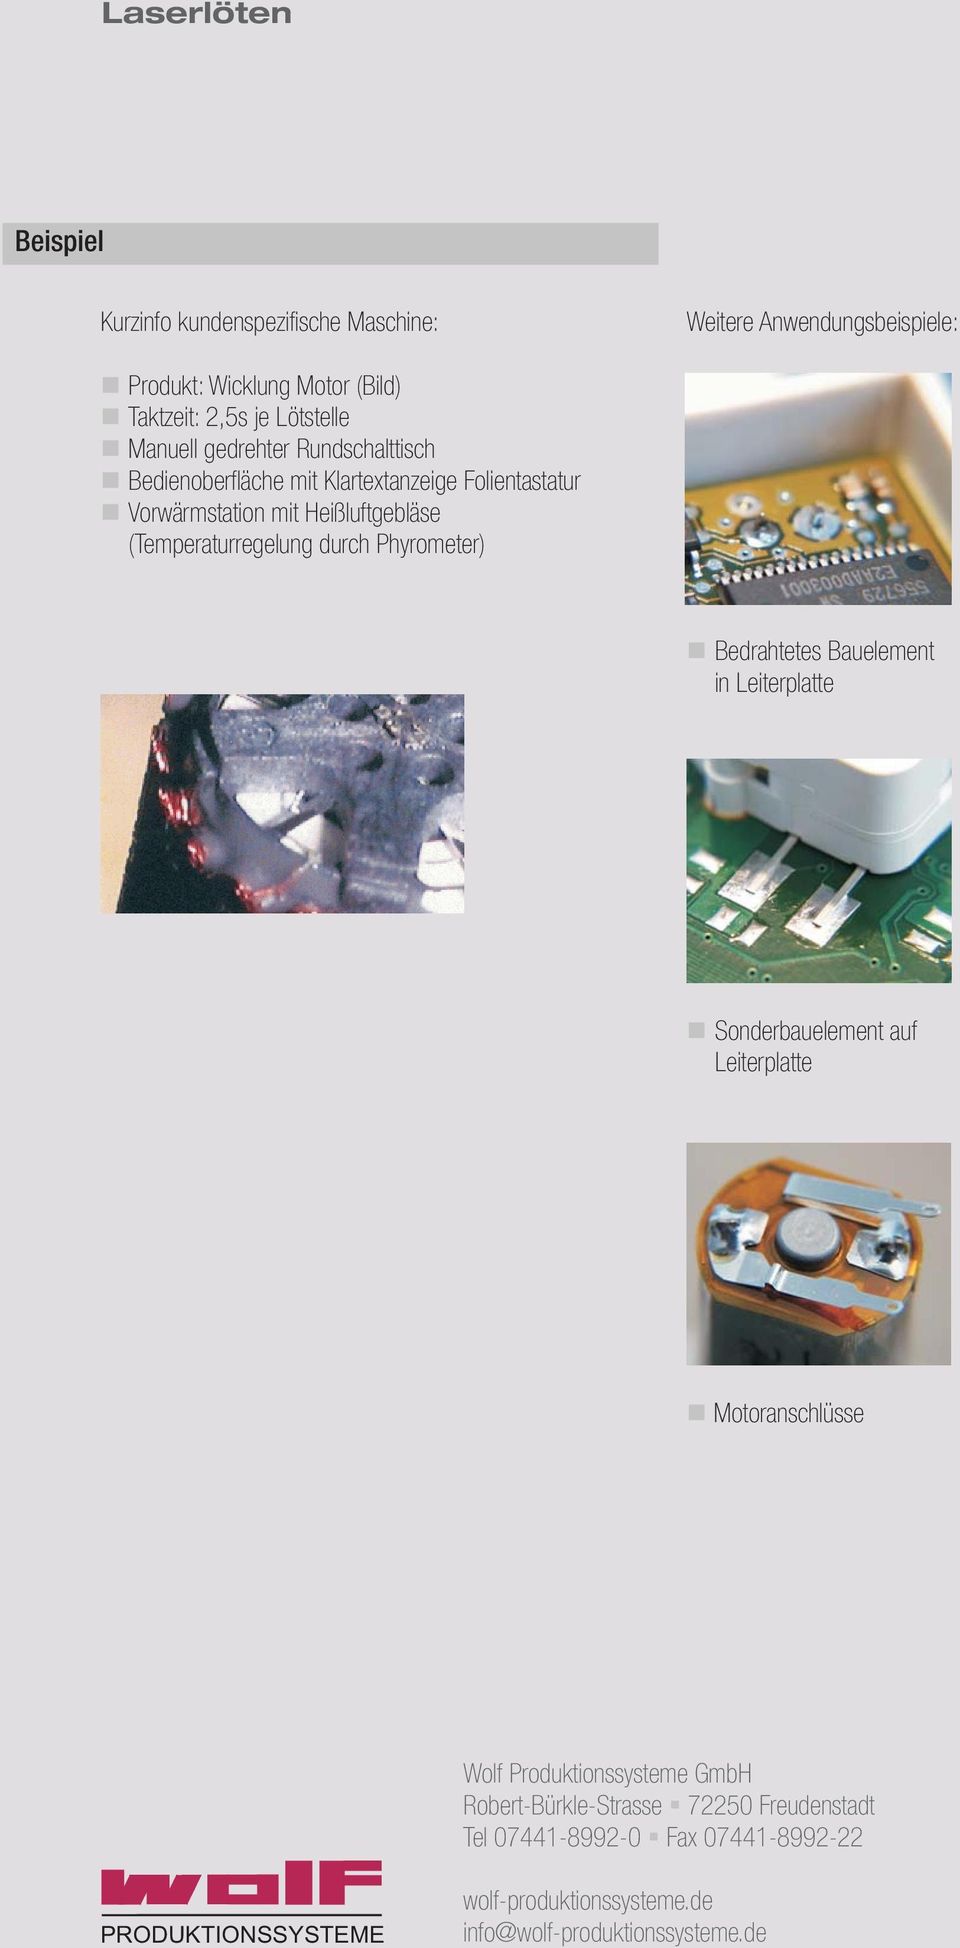 durch Phyrometer) Bedrahtetes Bauelement in Leiterplatte Sonderbauelement auf Leiterplatte Motoranschlüsse Wolf Produktionssysteme GmbH